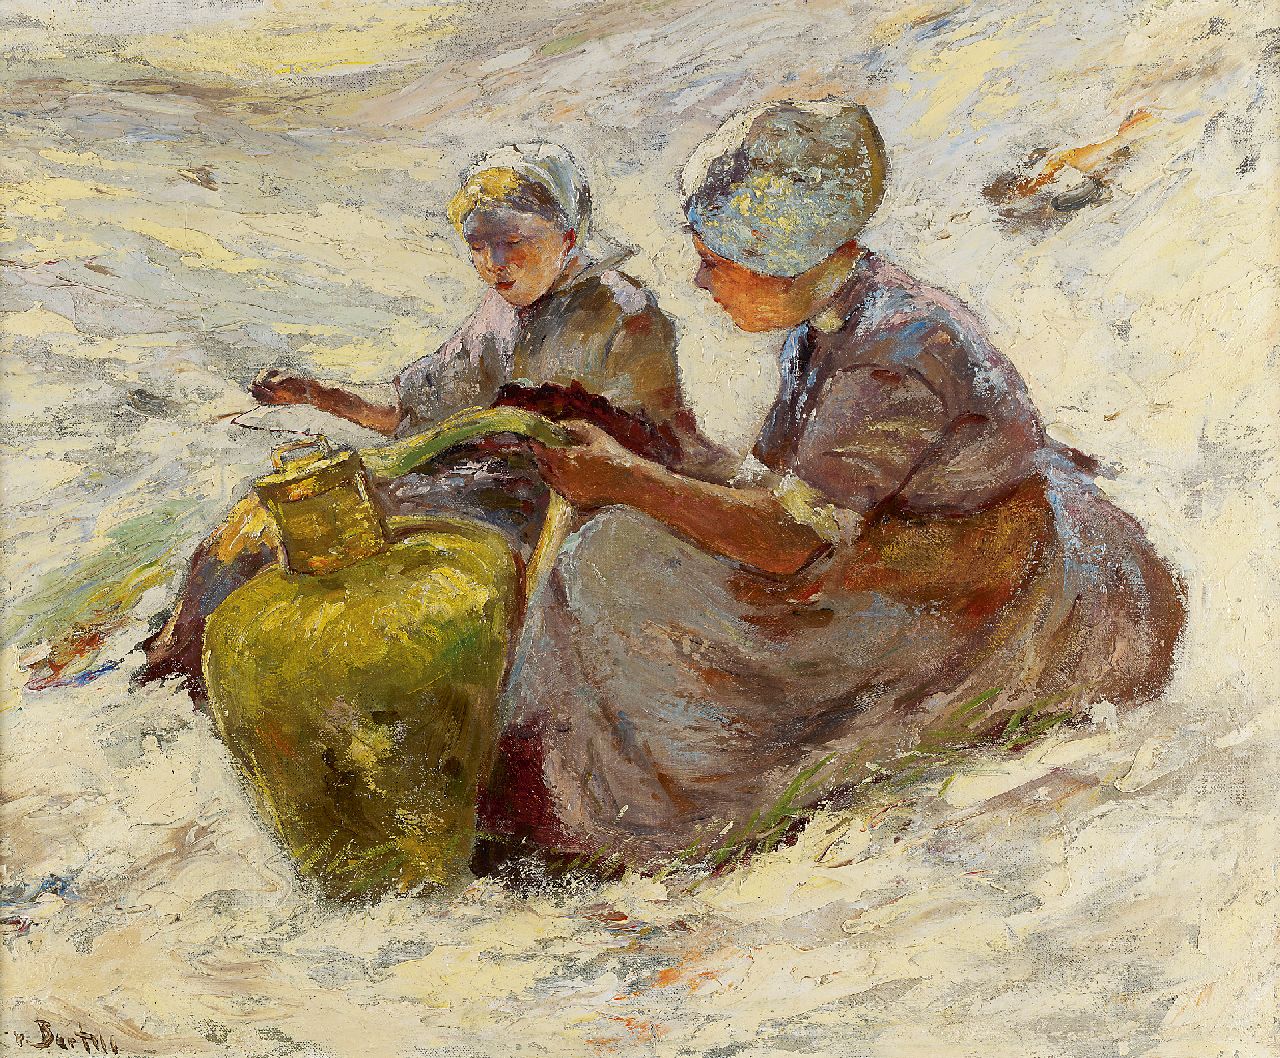 Bartels H. von | Hans von Bartels, Twee vissersvrouwen in de duinen, olieverf op doek 50,2 x 59,9 cm, gesigneerd linksonder